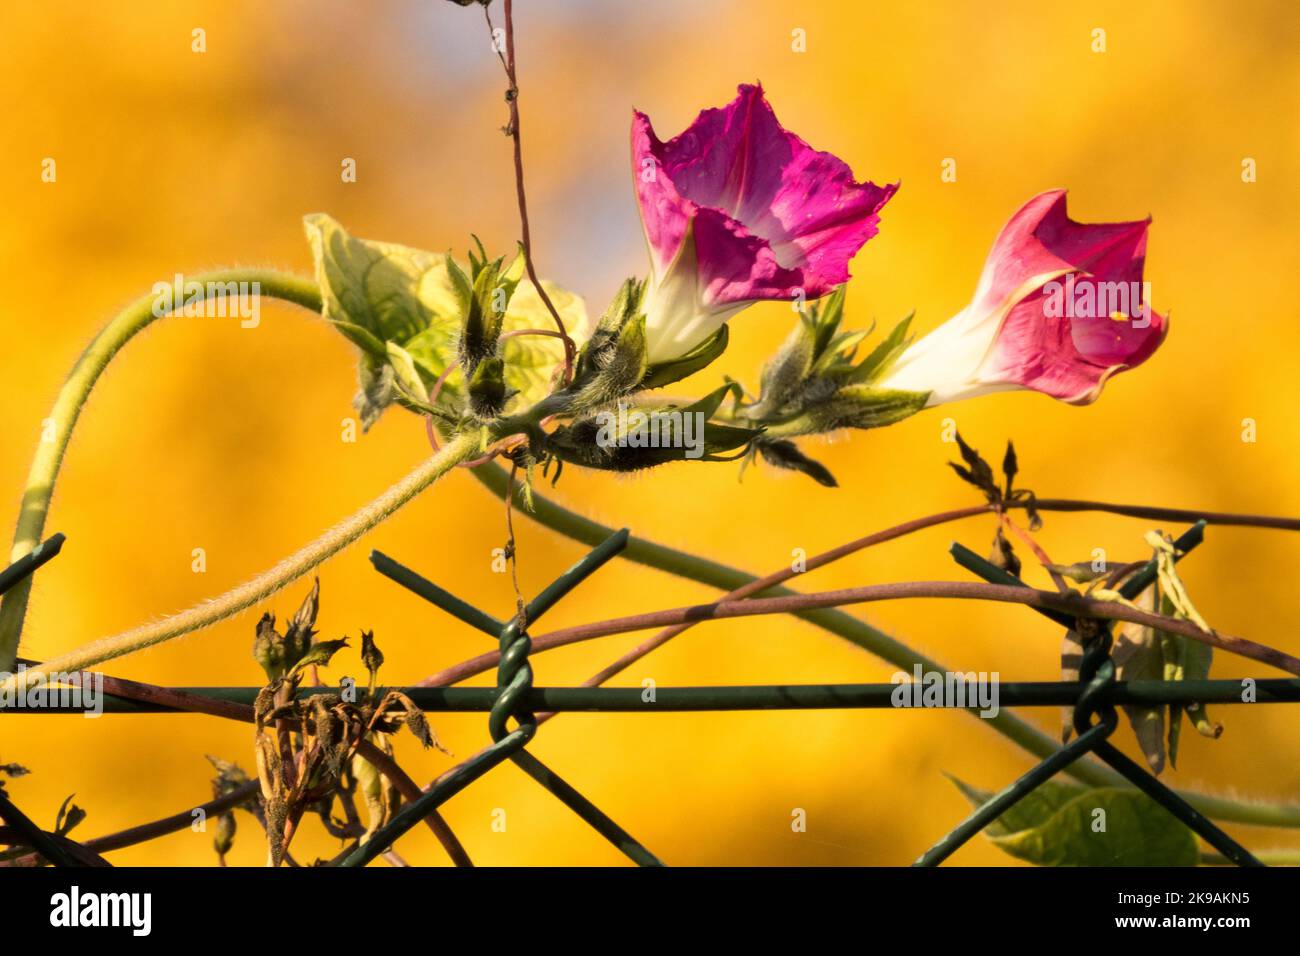 Plante grimpeuse sur fil, Ipomoea purpurea, automne, Ipomoea Flower Morning Glory Flower Banque D'Images